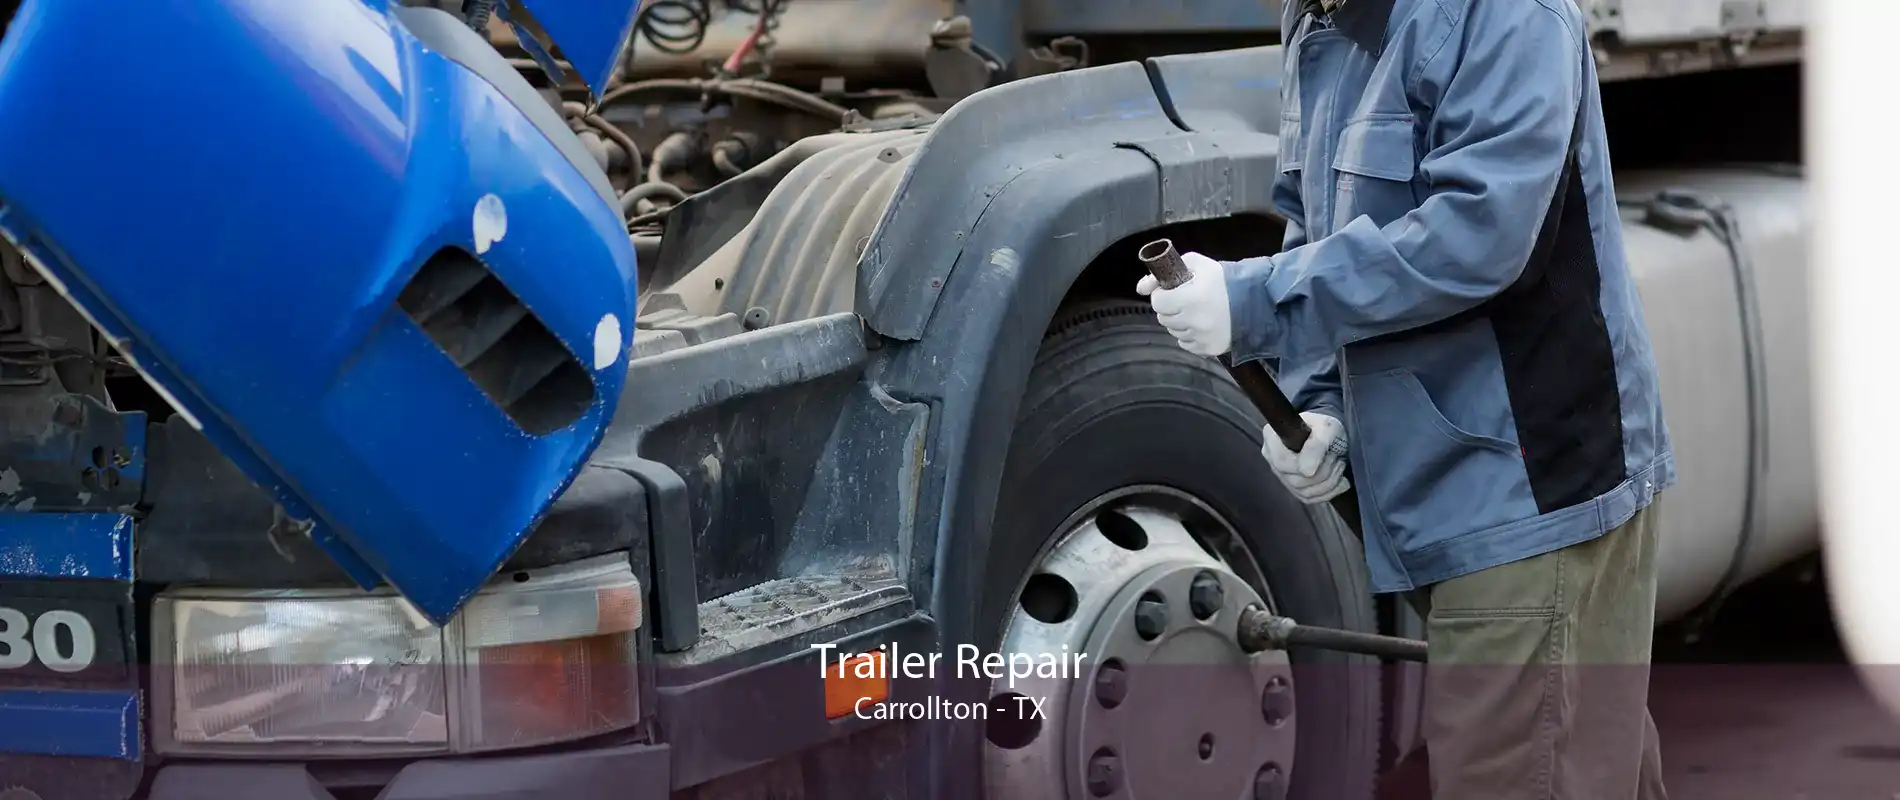 Trailer Repair Carrollton - TX